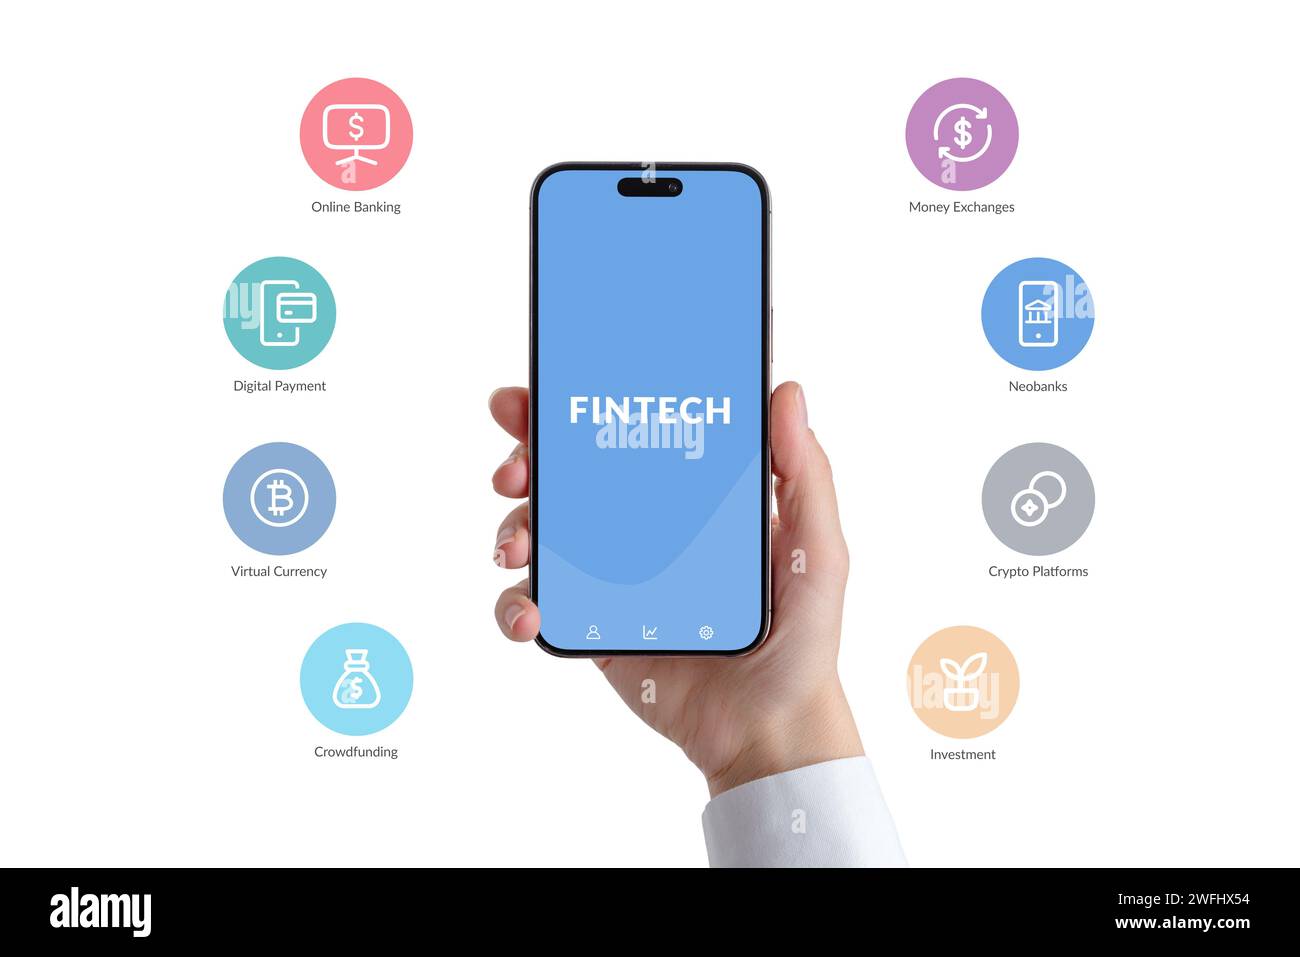 Das Smartphone zeigt eine Fintech-App an, die von beliebten Fintech-Dienstsymbolen umgeben ist. Optimierung der Finanzen durch nahtlosen Zugriff auf vielfältige digitale Medien Stockfoto